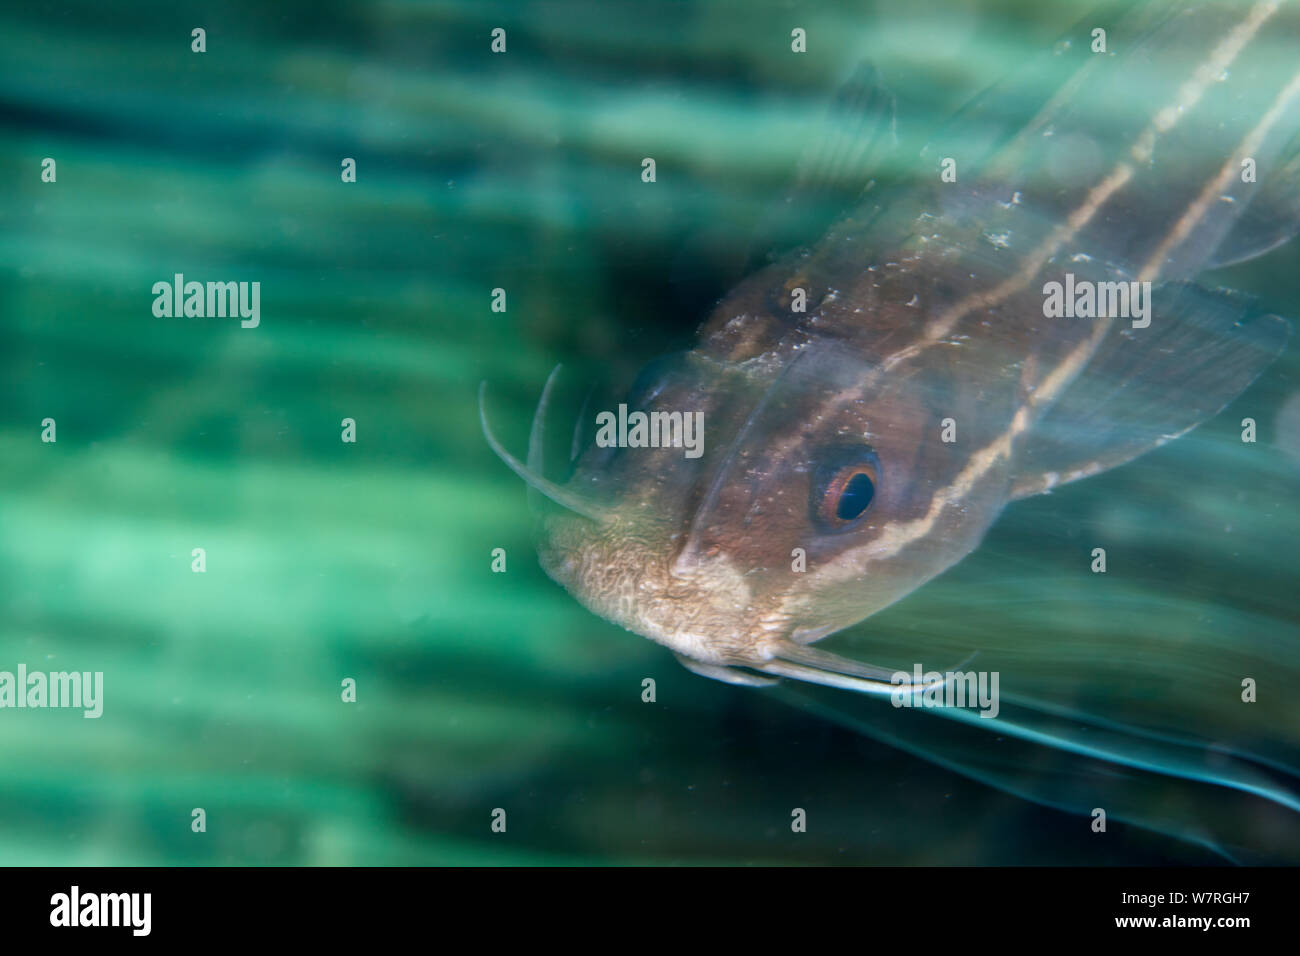 Pesce gatto striato (Plotosus lineatus) sfocata fotografia di movimento. Bilang Bilangang Isola, Danajon banca centrale, Visayas, Filippine, Aprile Foto Stock